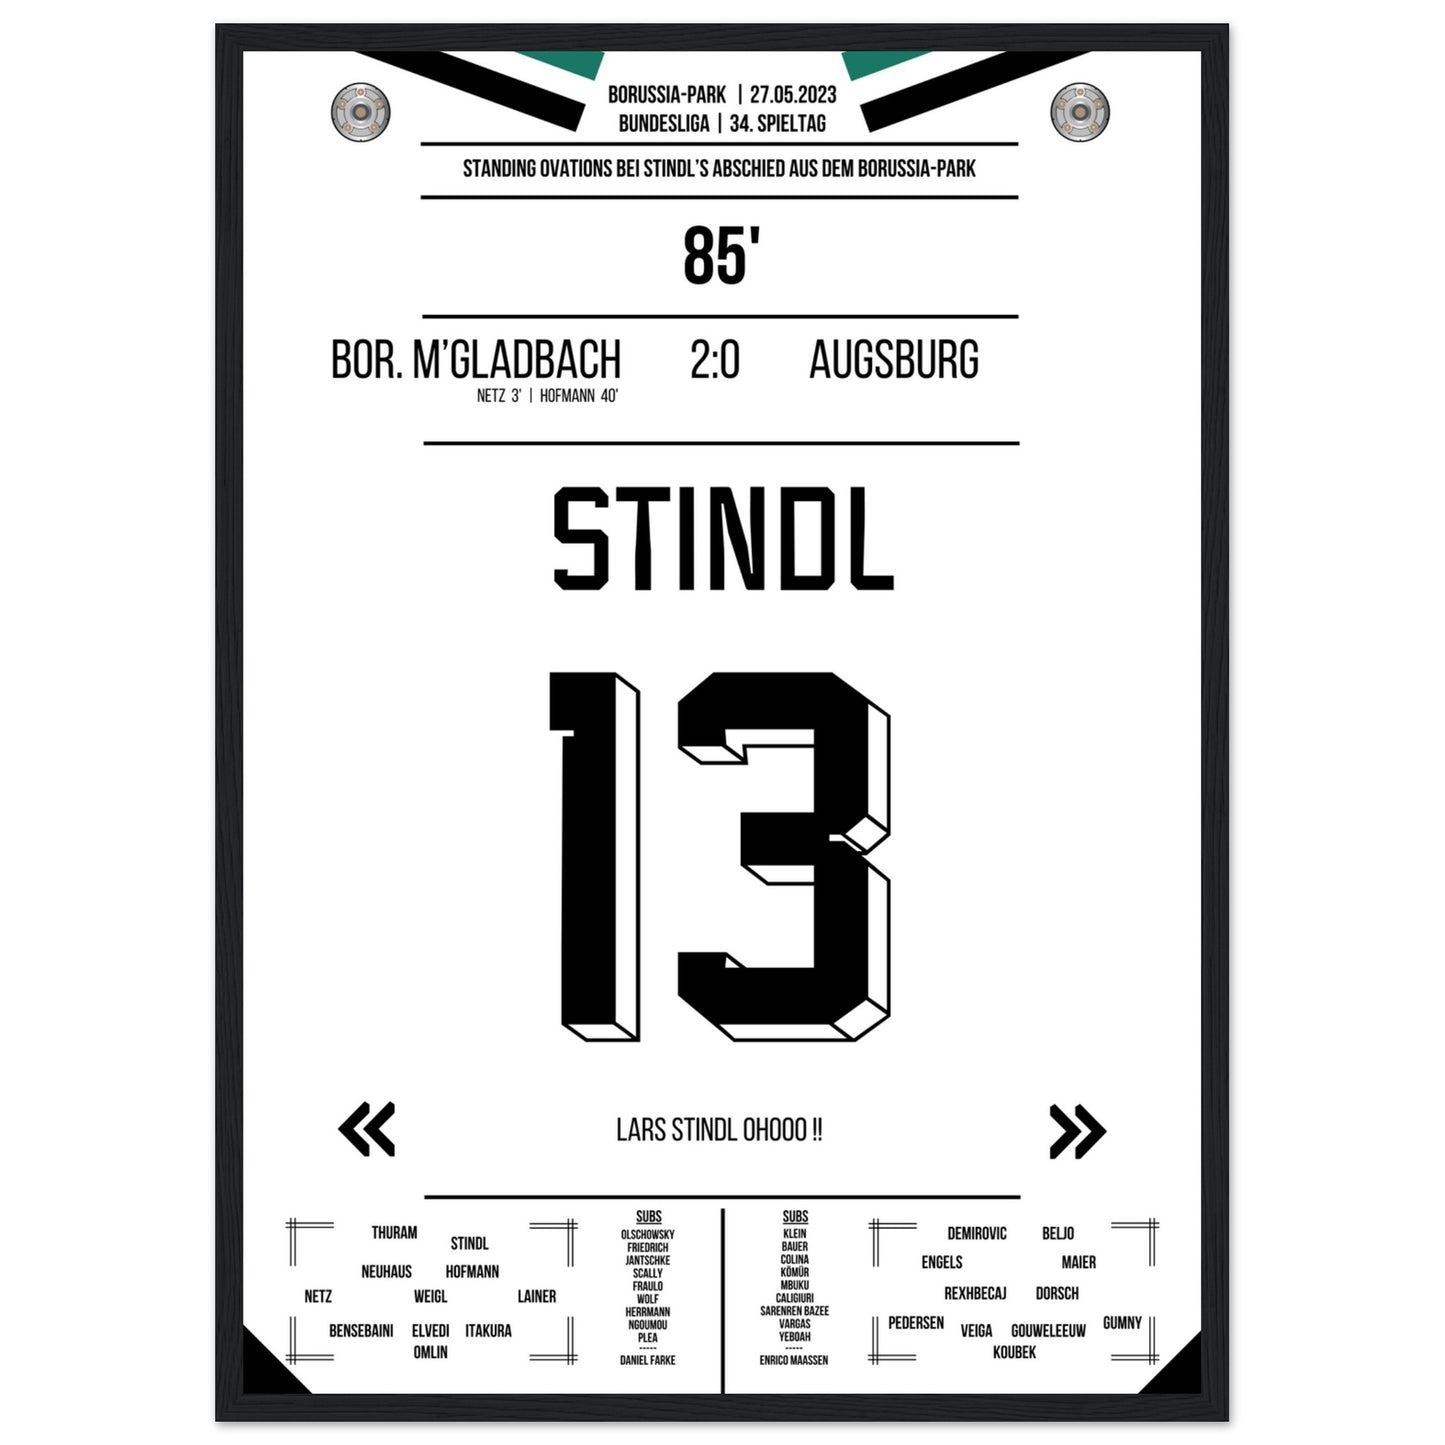 Stindl's Verabschiedung im Borussia-Park 2023